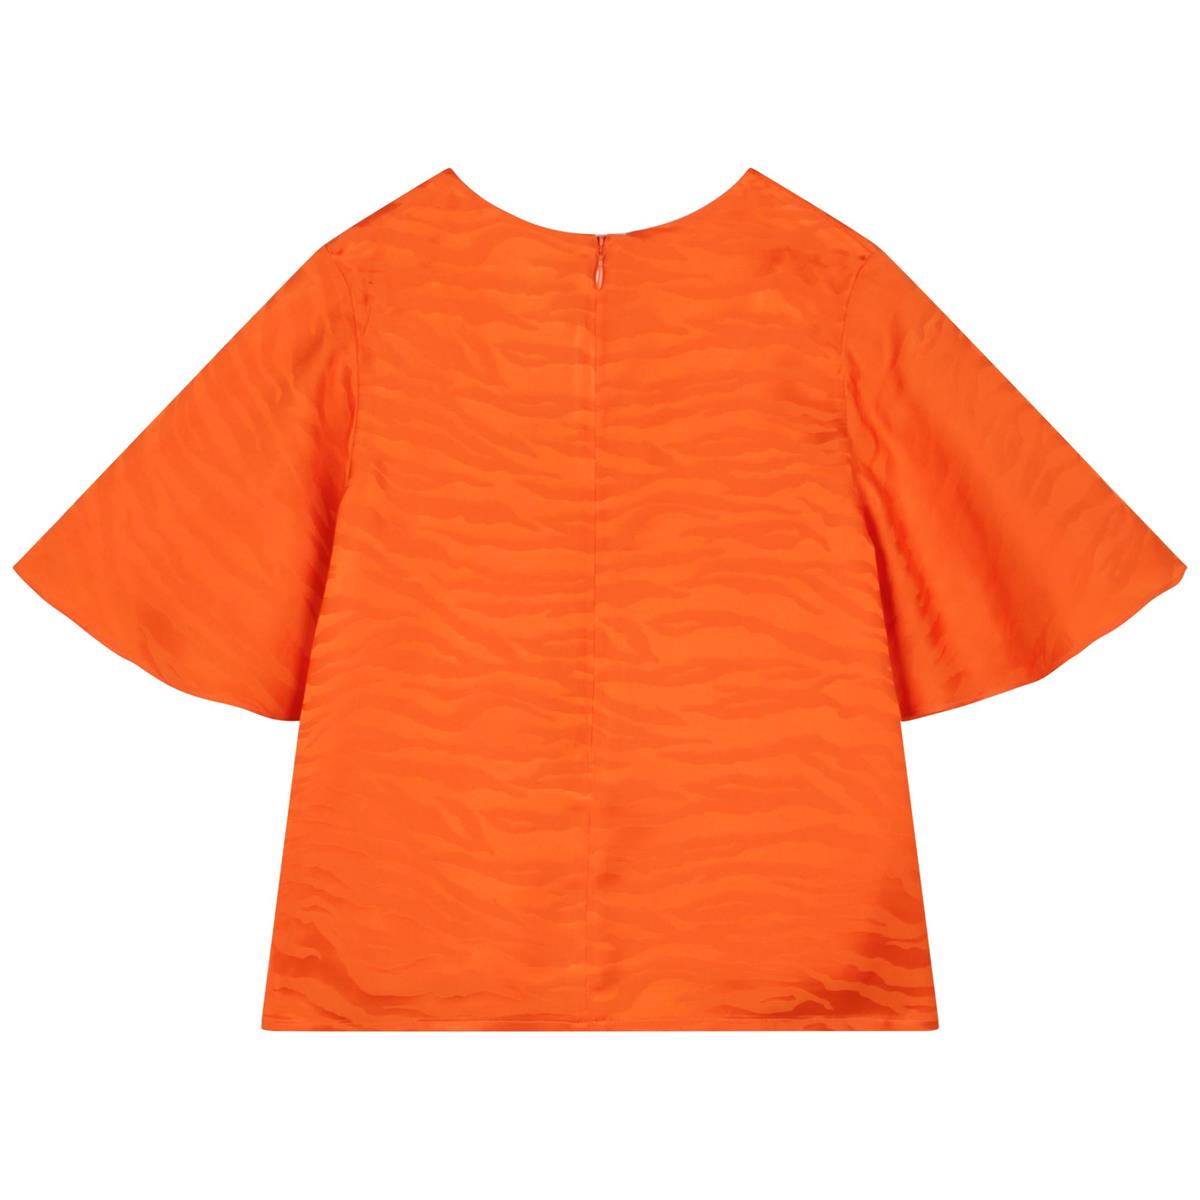 Girls Orange T-Shirt